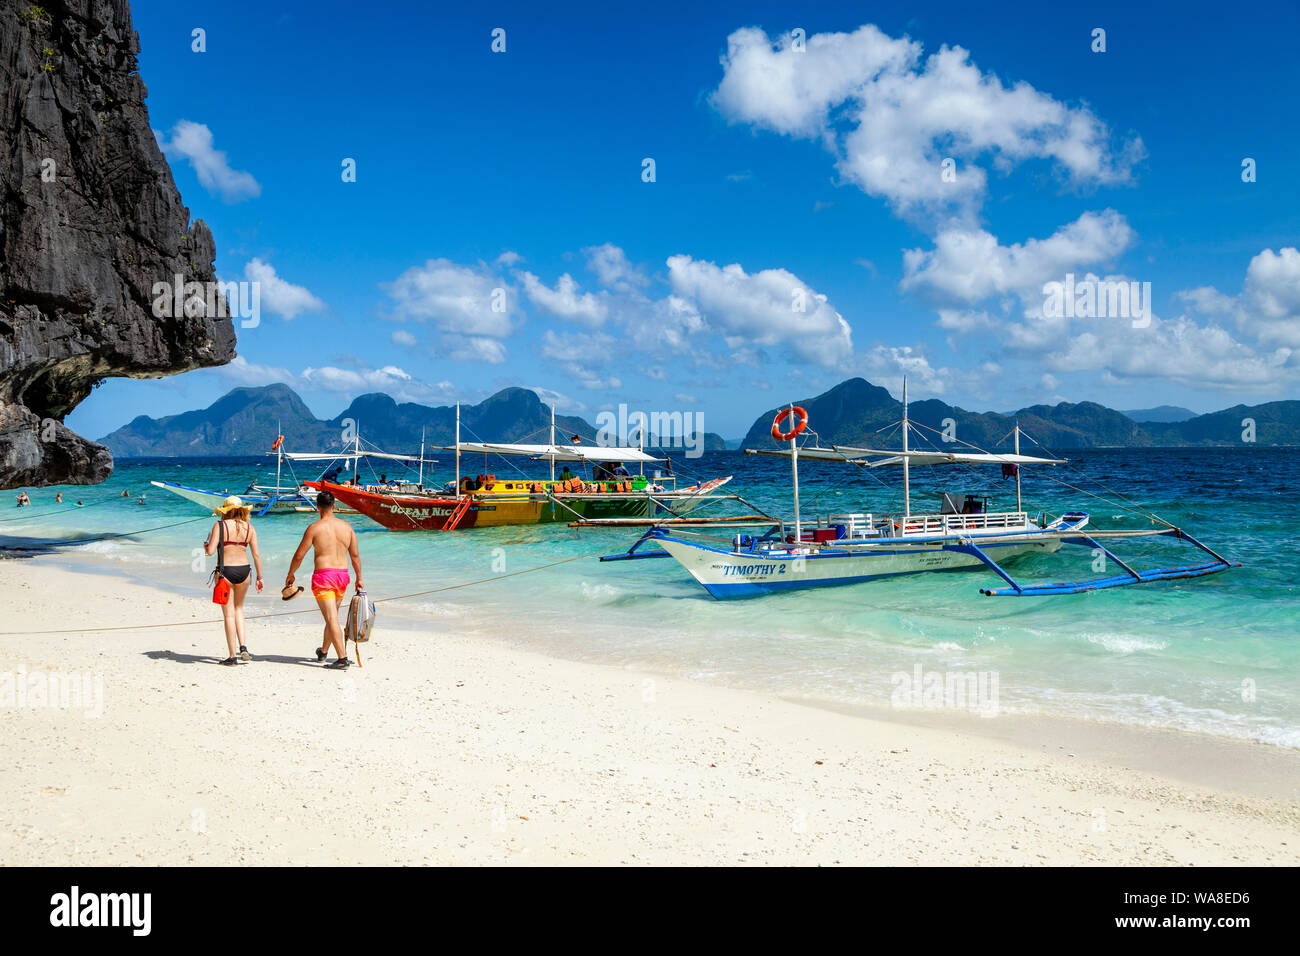 Traditional Wooden Banca Boats At Entalula Beach, El Nido, Palawan, The Philippines Stock Photo